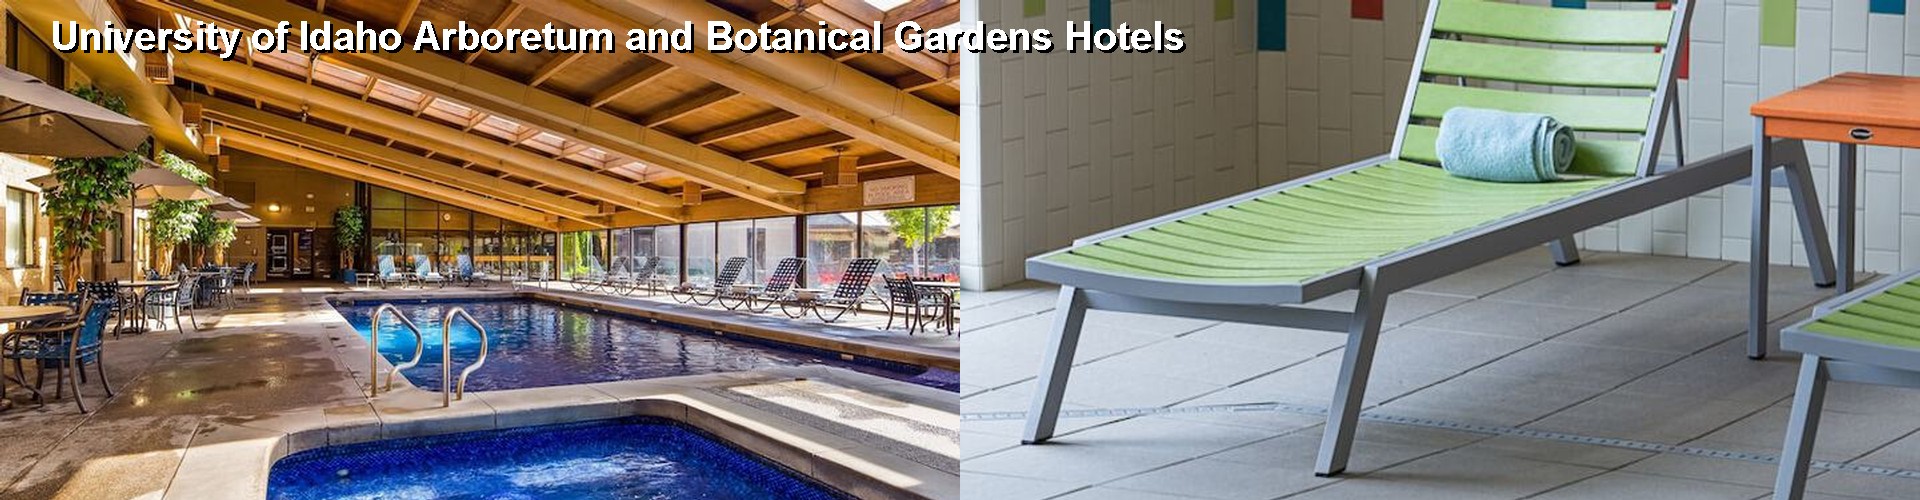 5 Best Hotels near University of Idaho Arboretum and Botanical Gardens